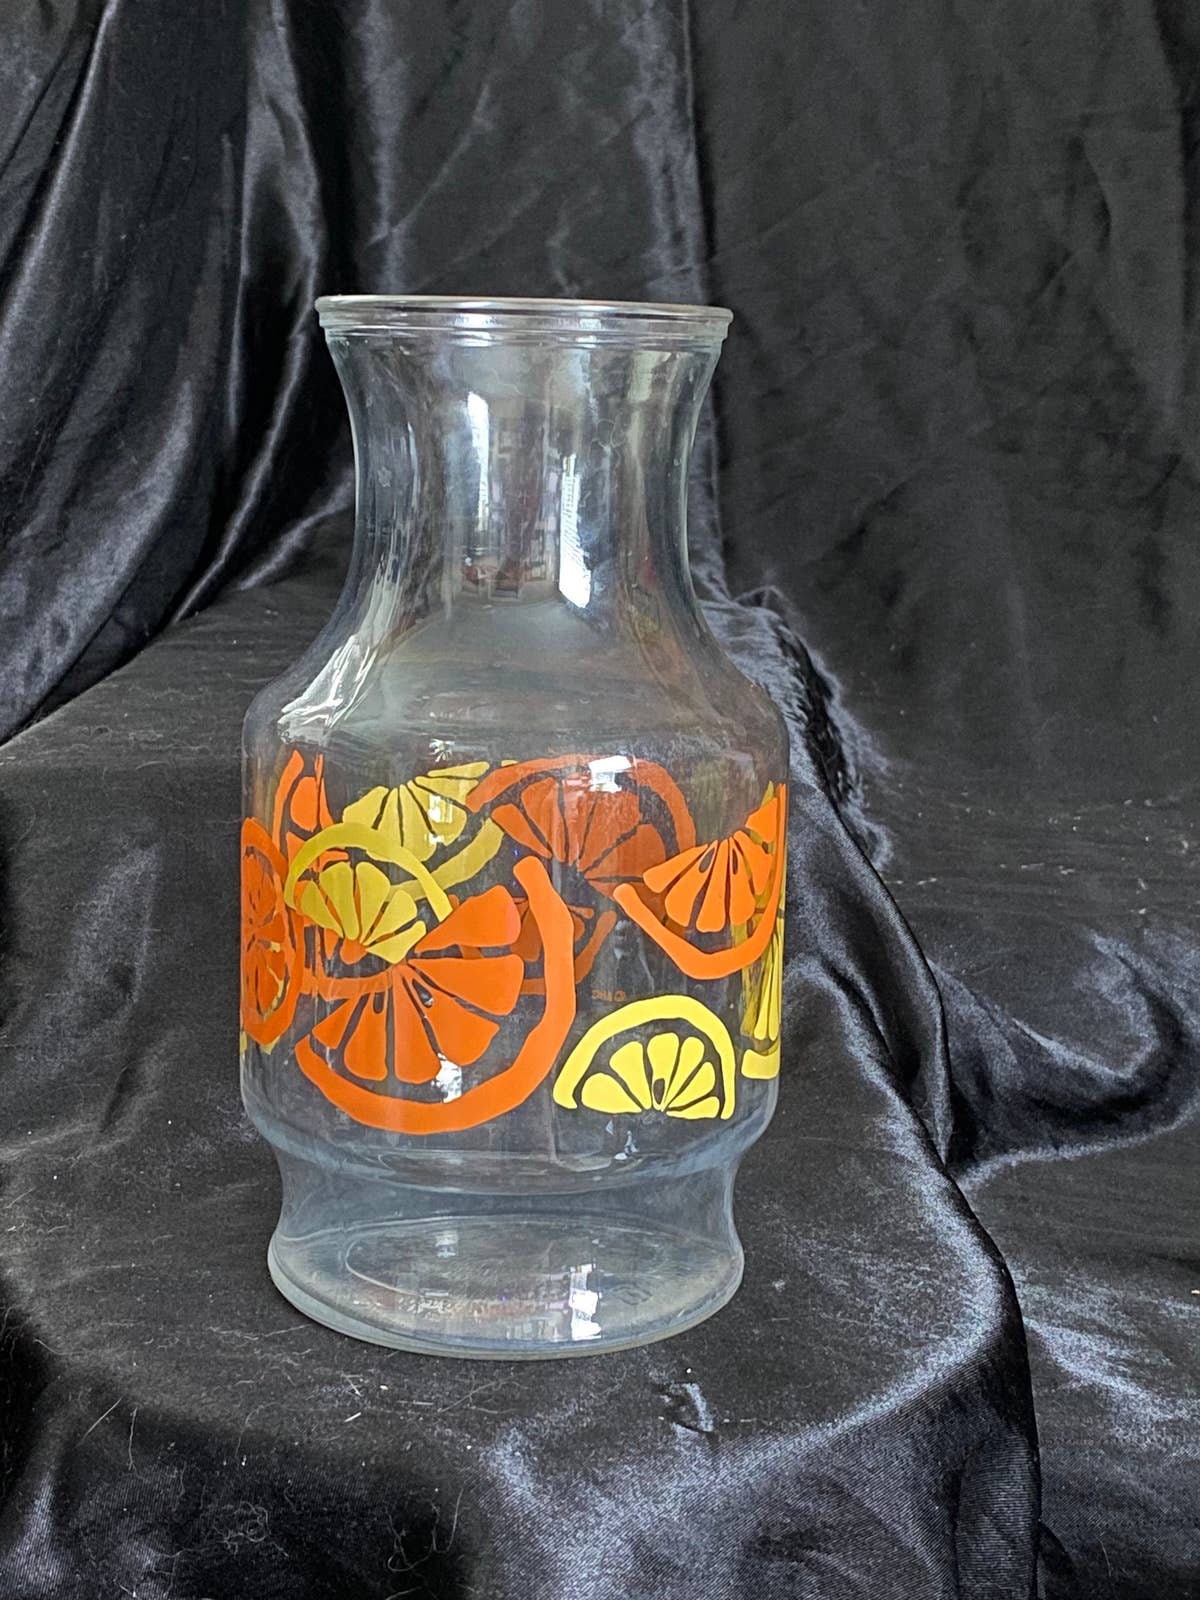 Vintage Glass Orange Juice Carafe Pitcher Jug Cups White Flower 1960's